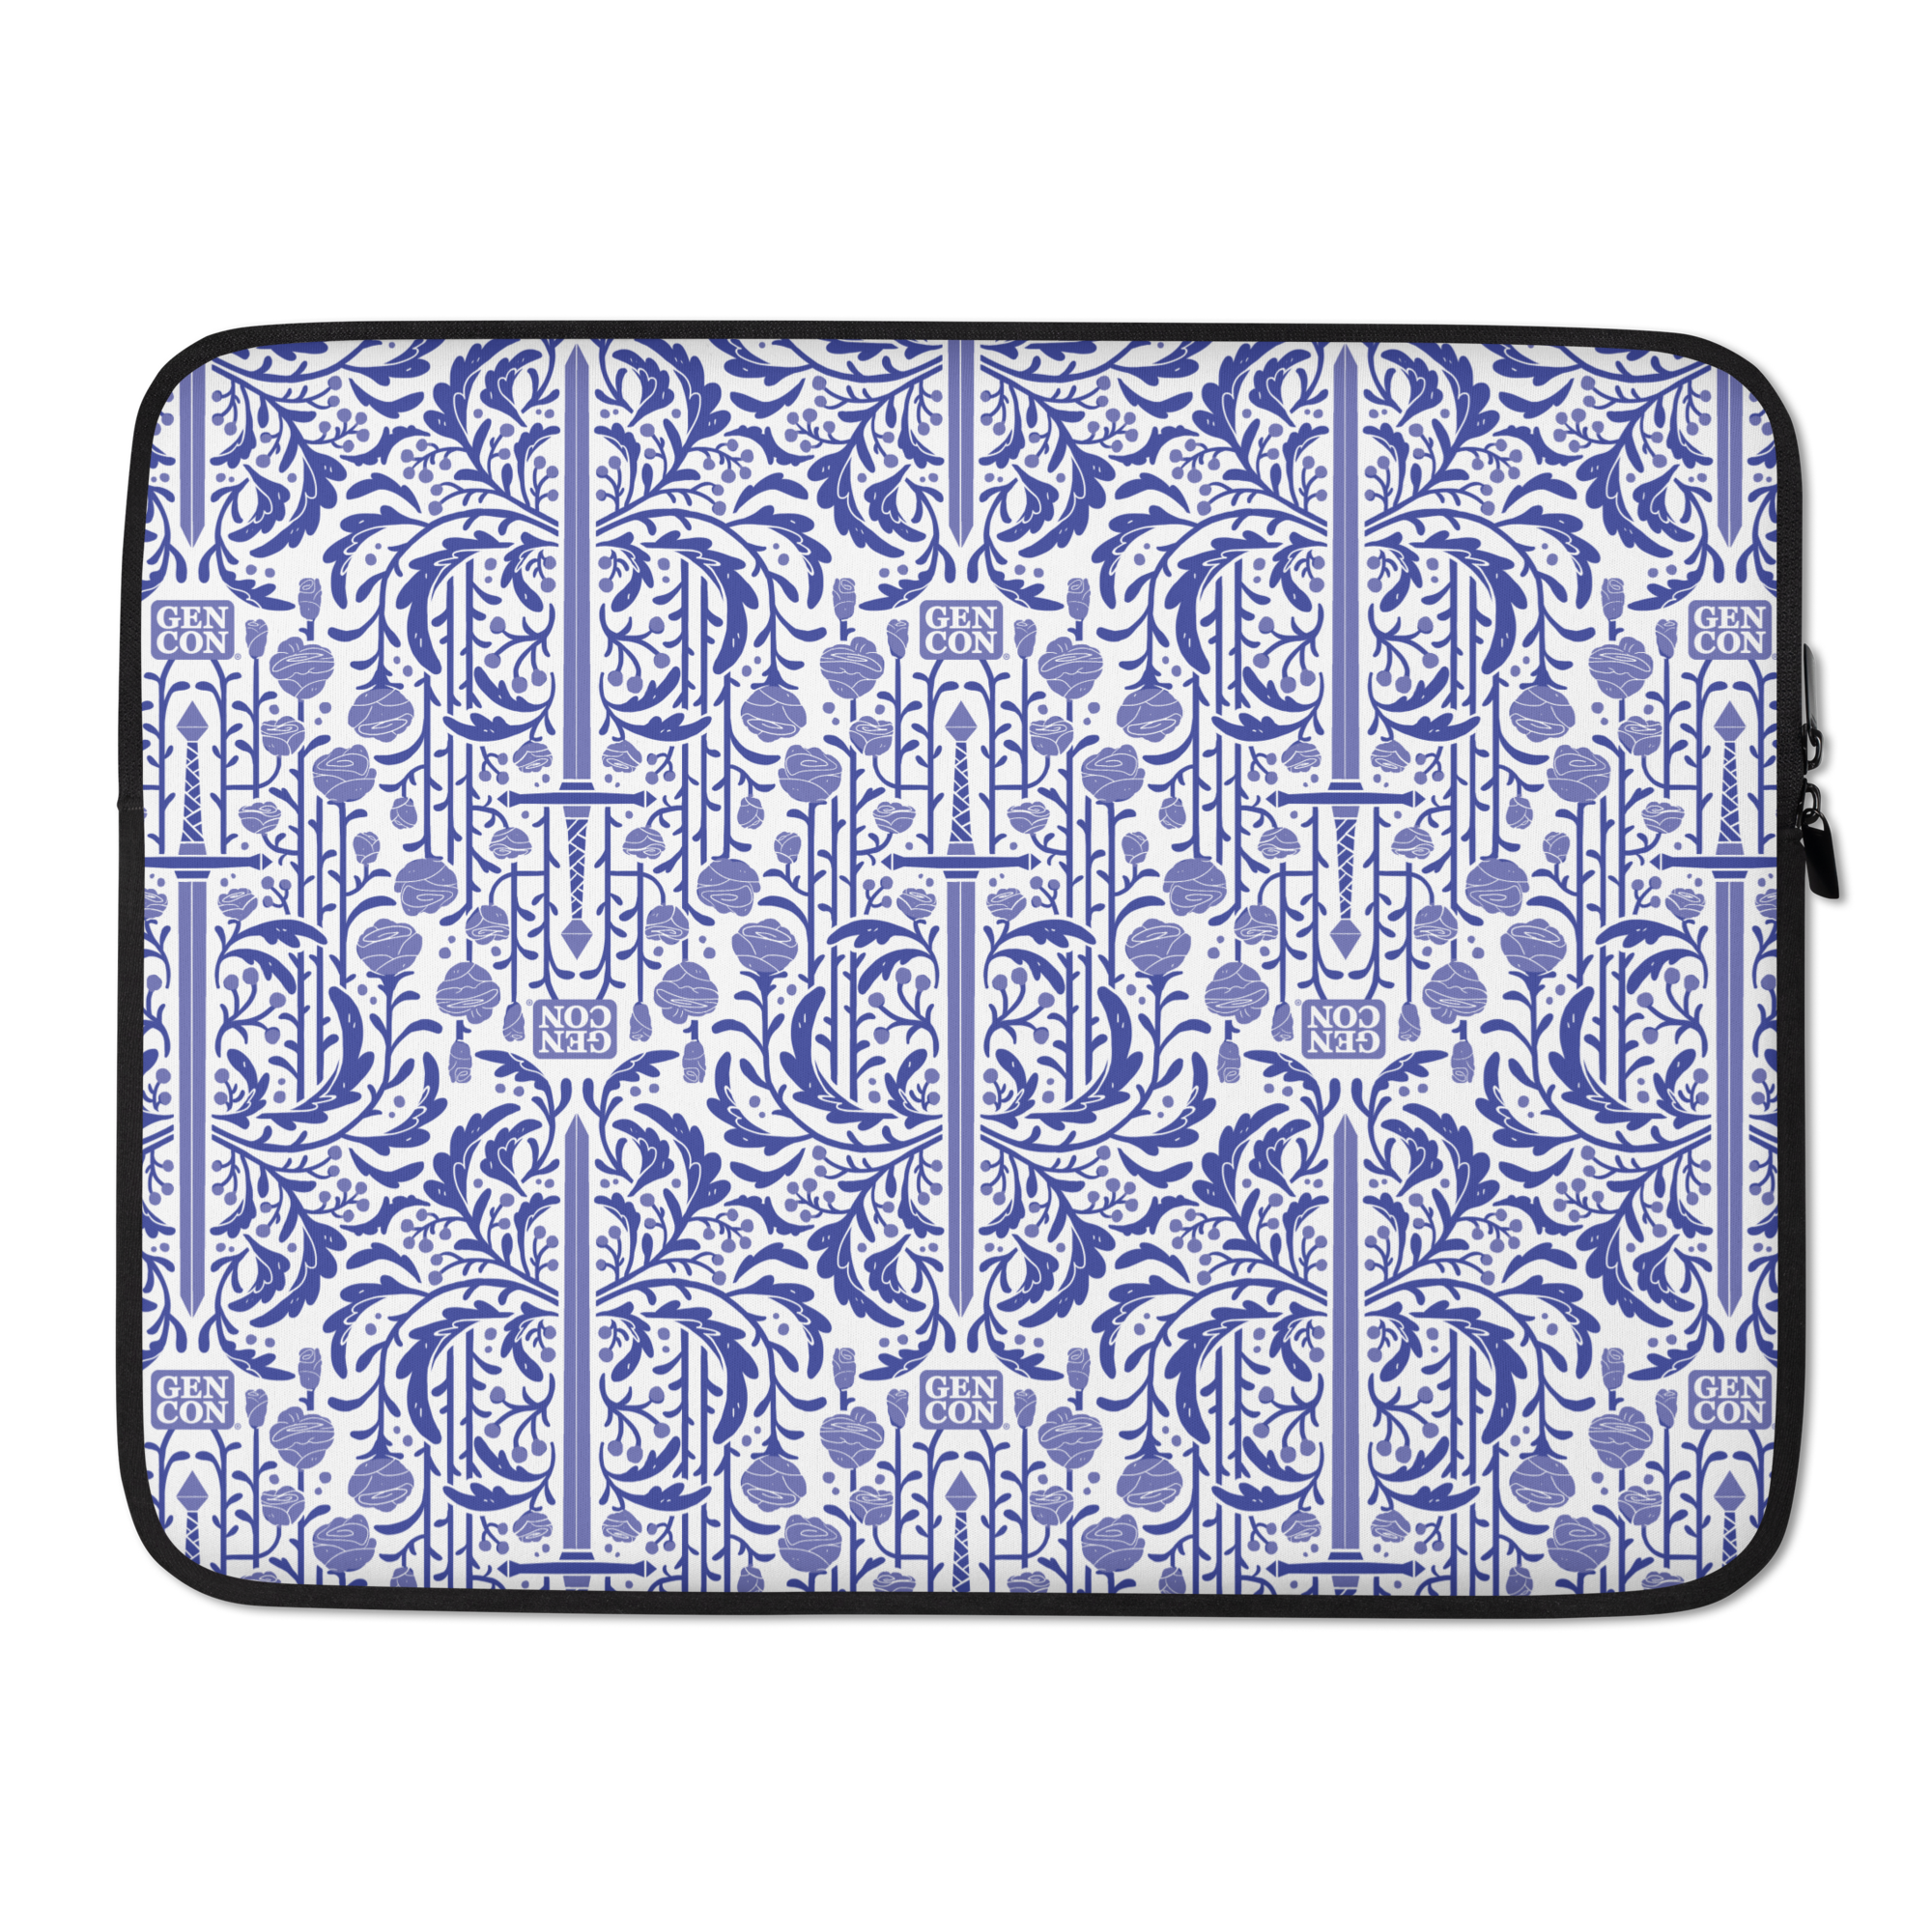 Gen Con Floral Sword Pattern Laptop Sleeve | Rollacrit